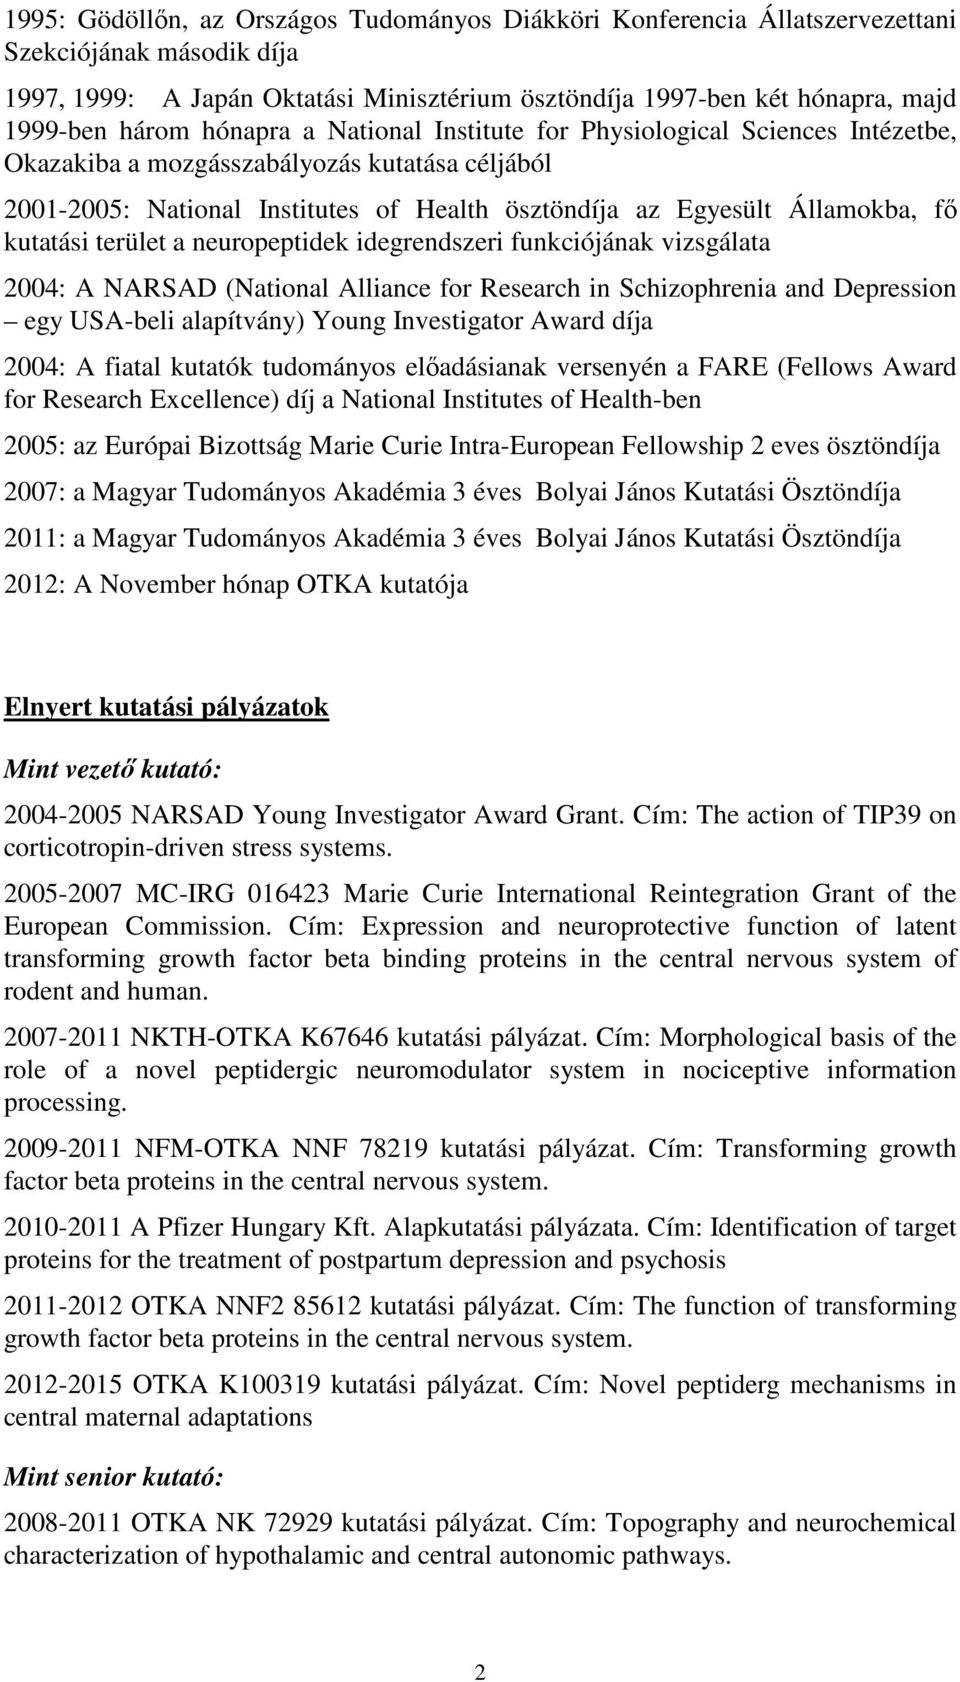 kutatási terület a neuropeptidek idegrendszeri funkciójának vizsgálata 2004: A NARSAD (National Alliance for Research in Schizophrenia and Depression egy USA-beli alapítvány) Young Investigator Award